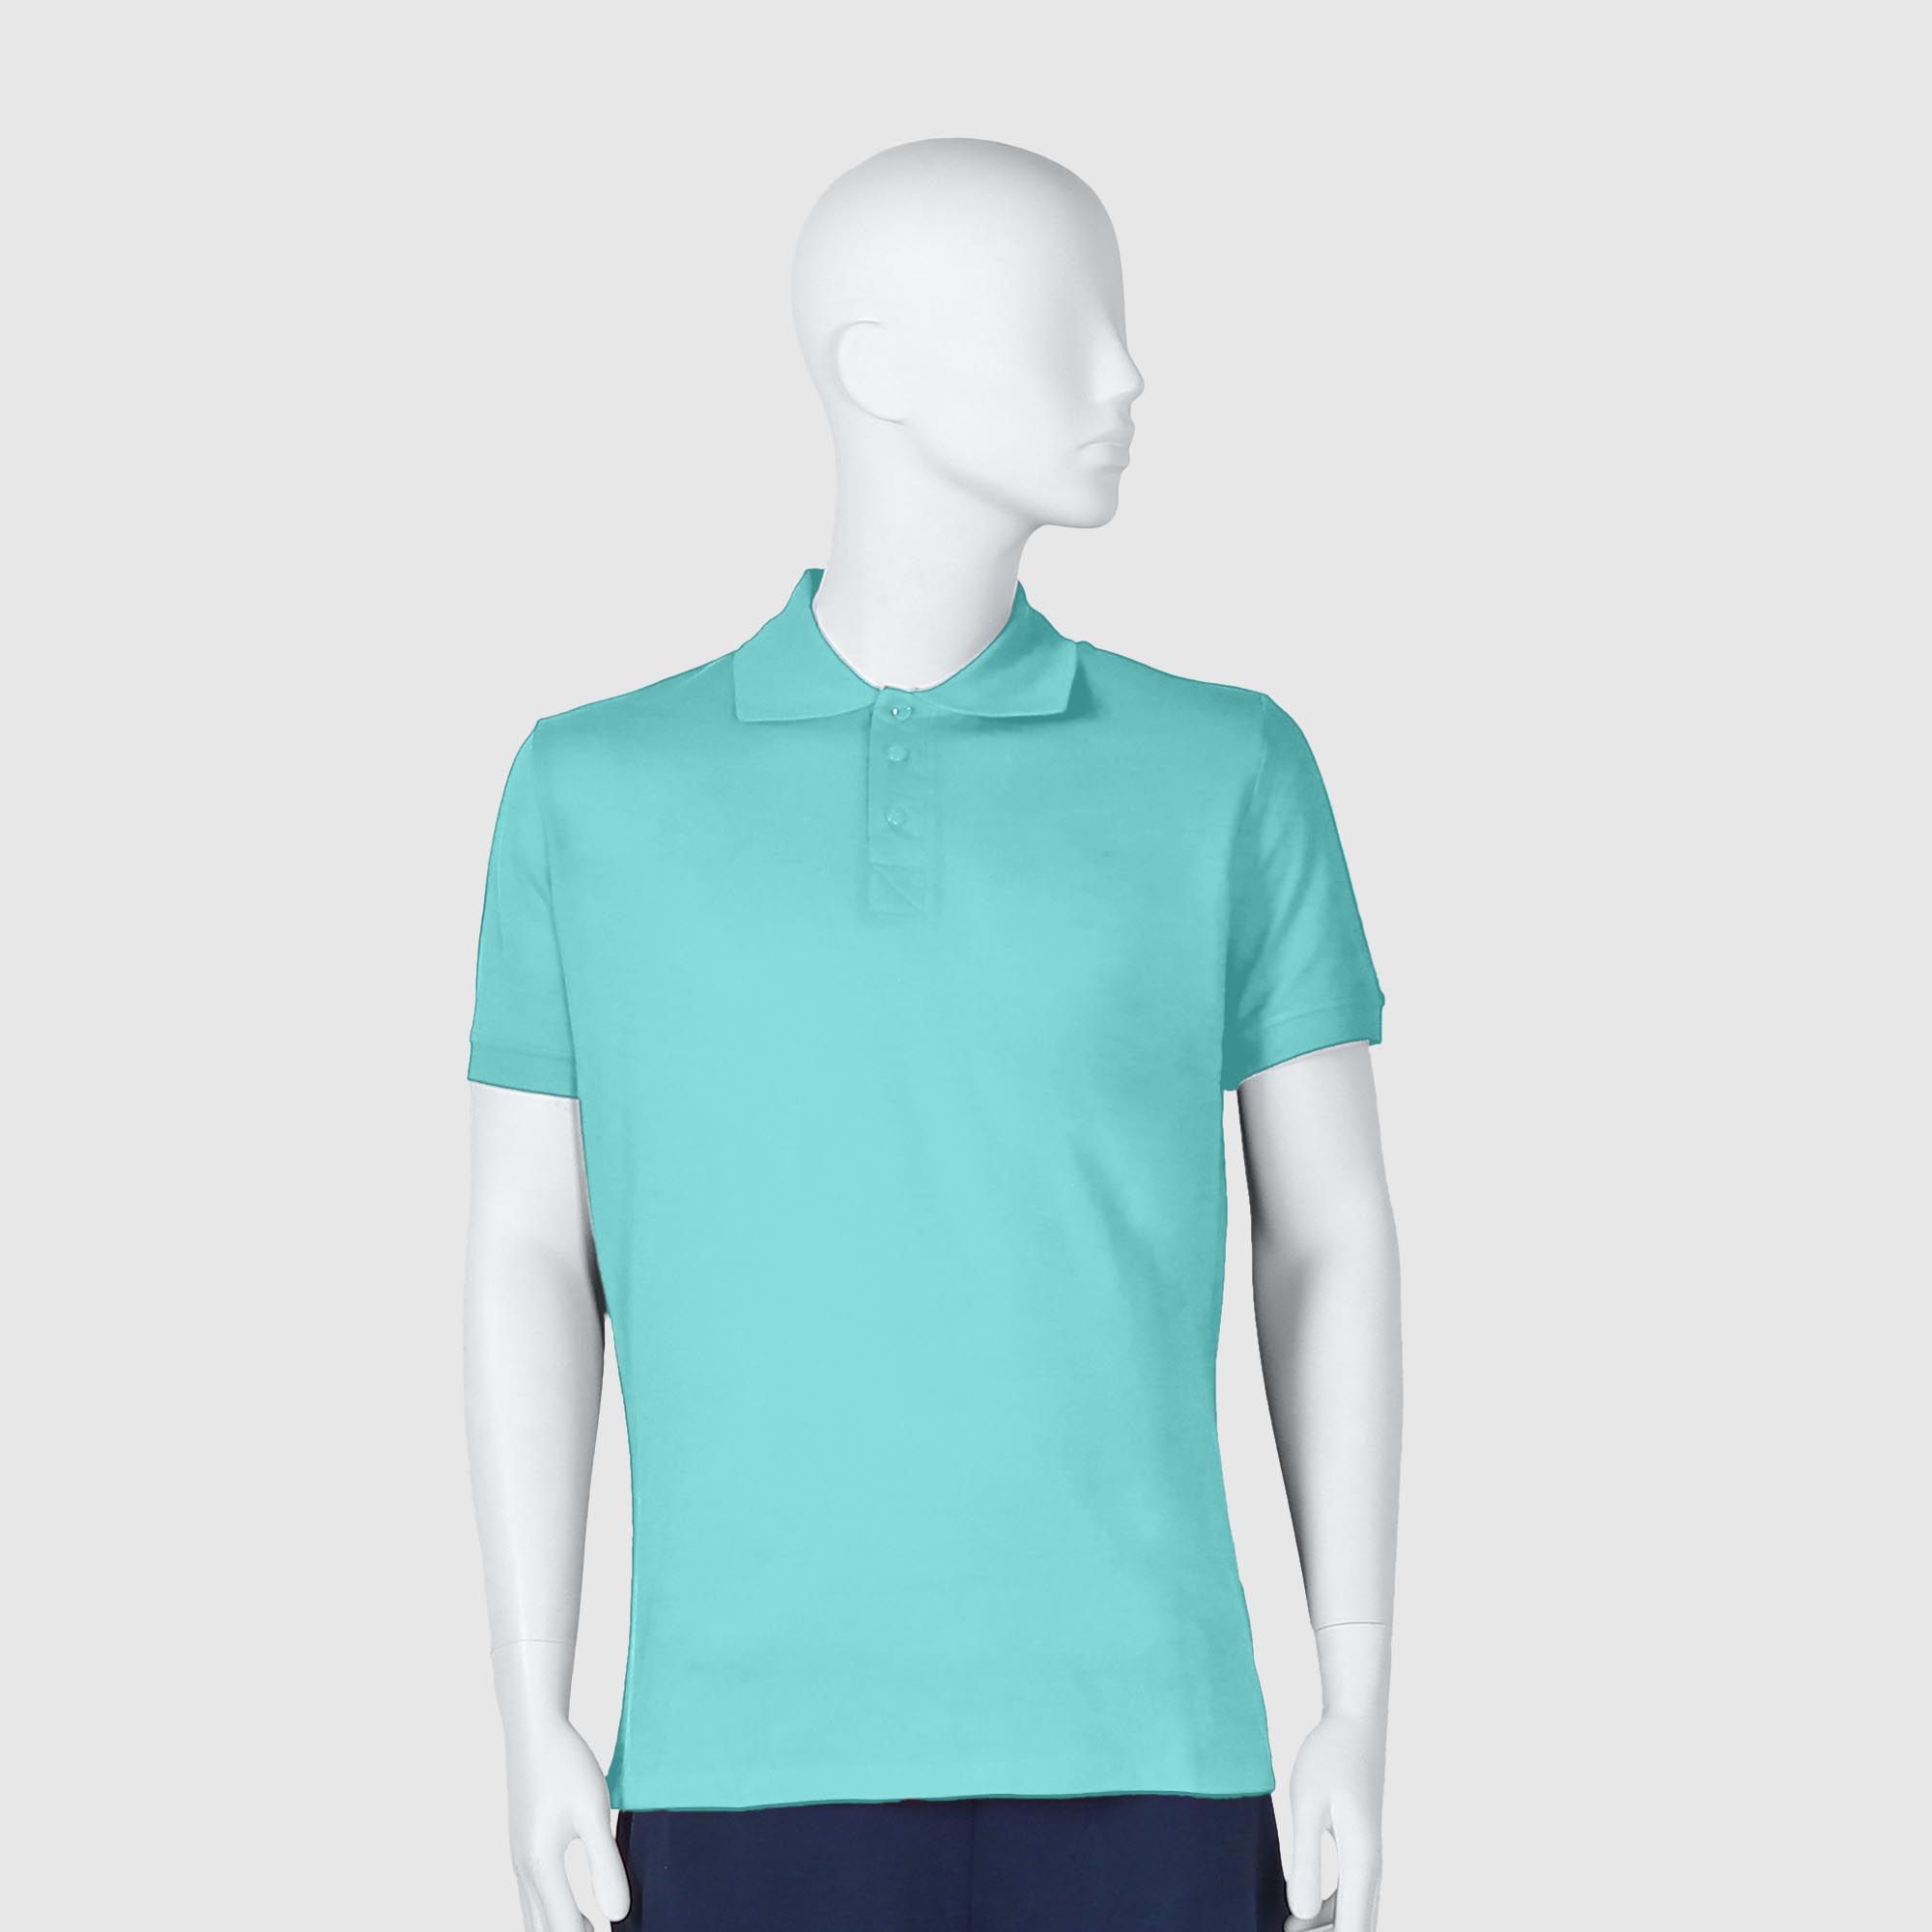 Мужская футболка-поло Diva Teks лазурная (DTD-12), цвет лазурный, размер 50-52